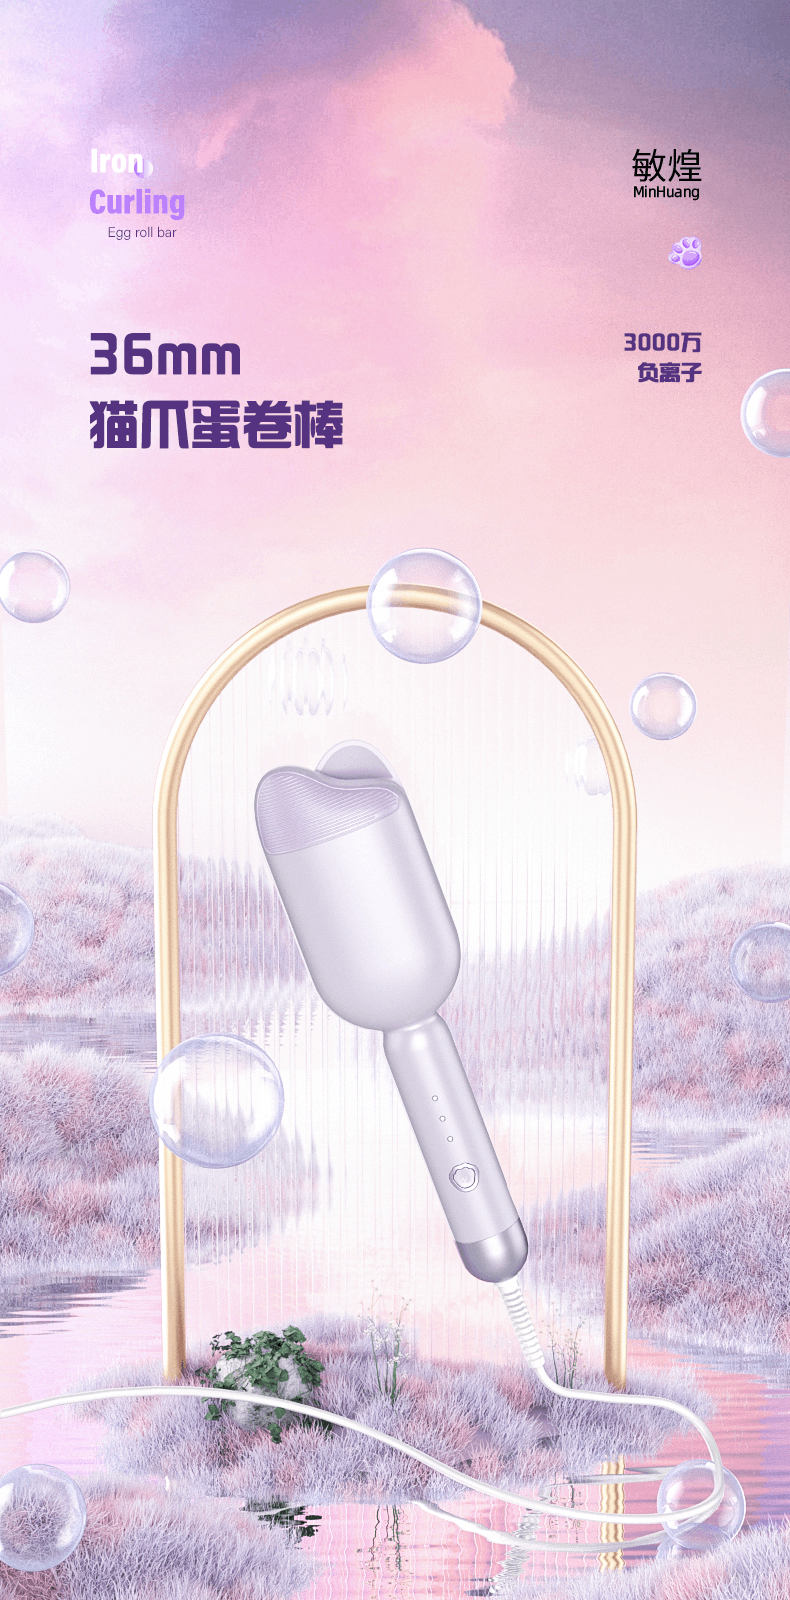 中国MinHuang敏煌负离子猫爪蛋卷棒 造型神器 紫色 1件